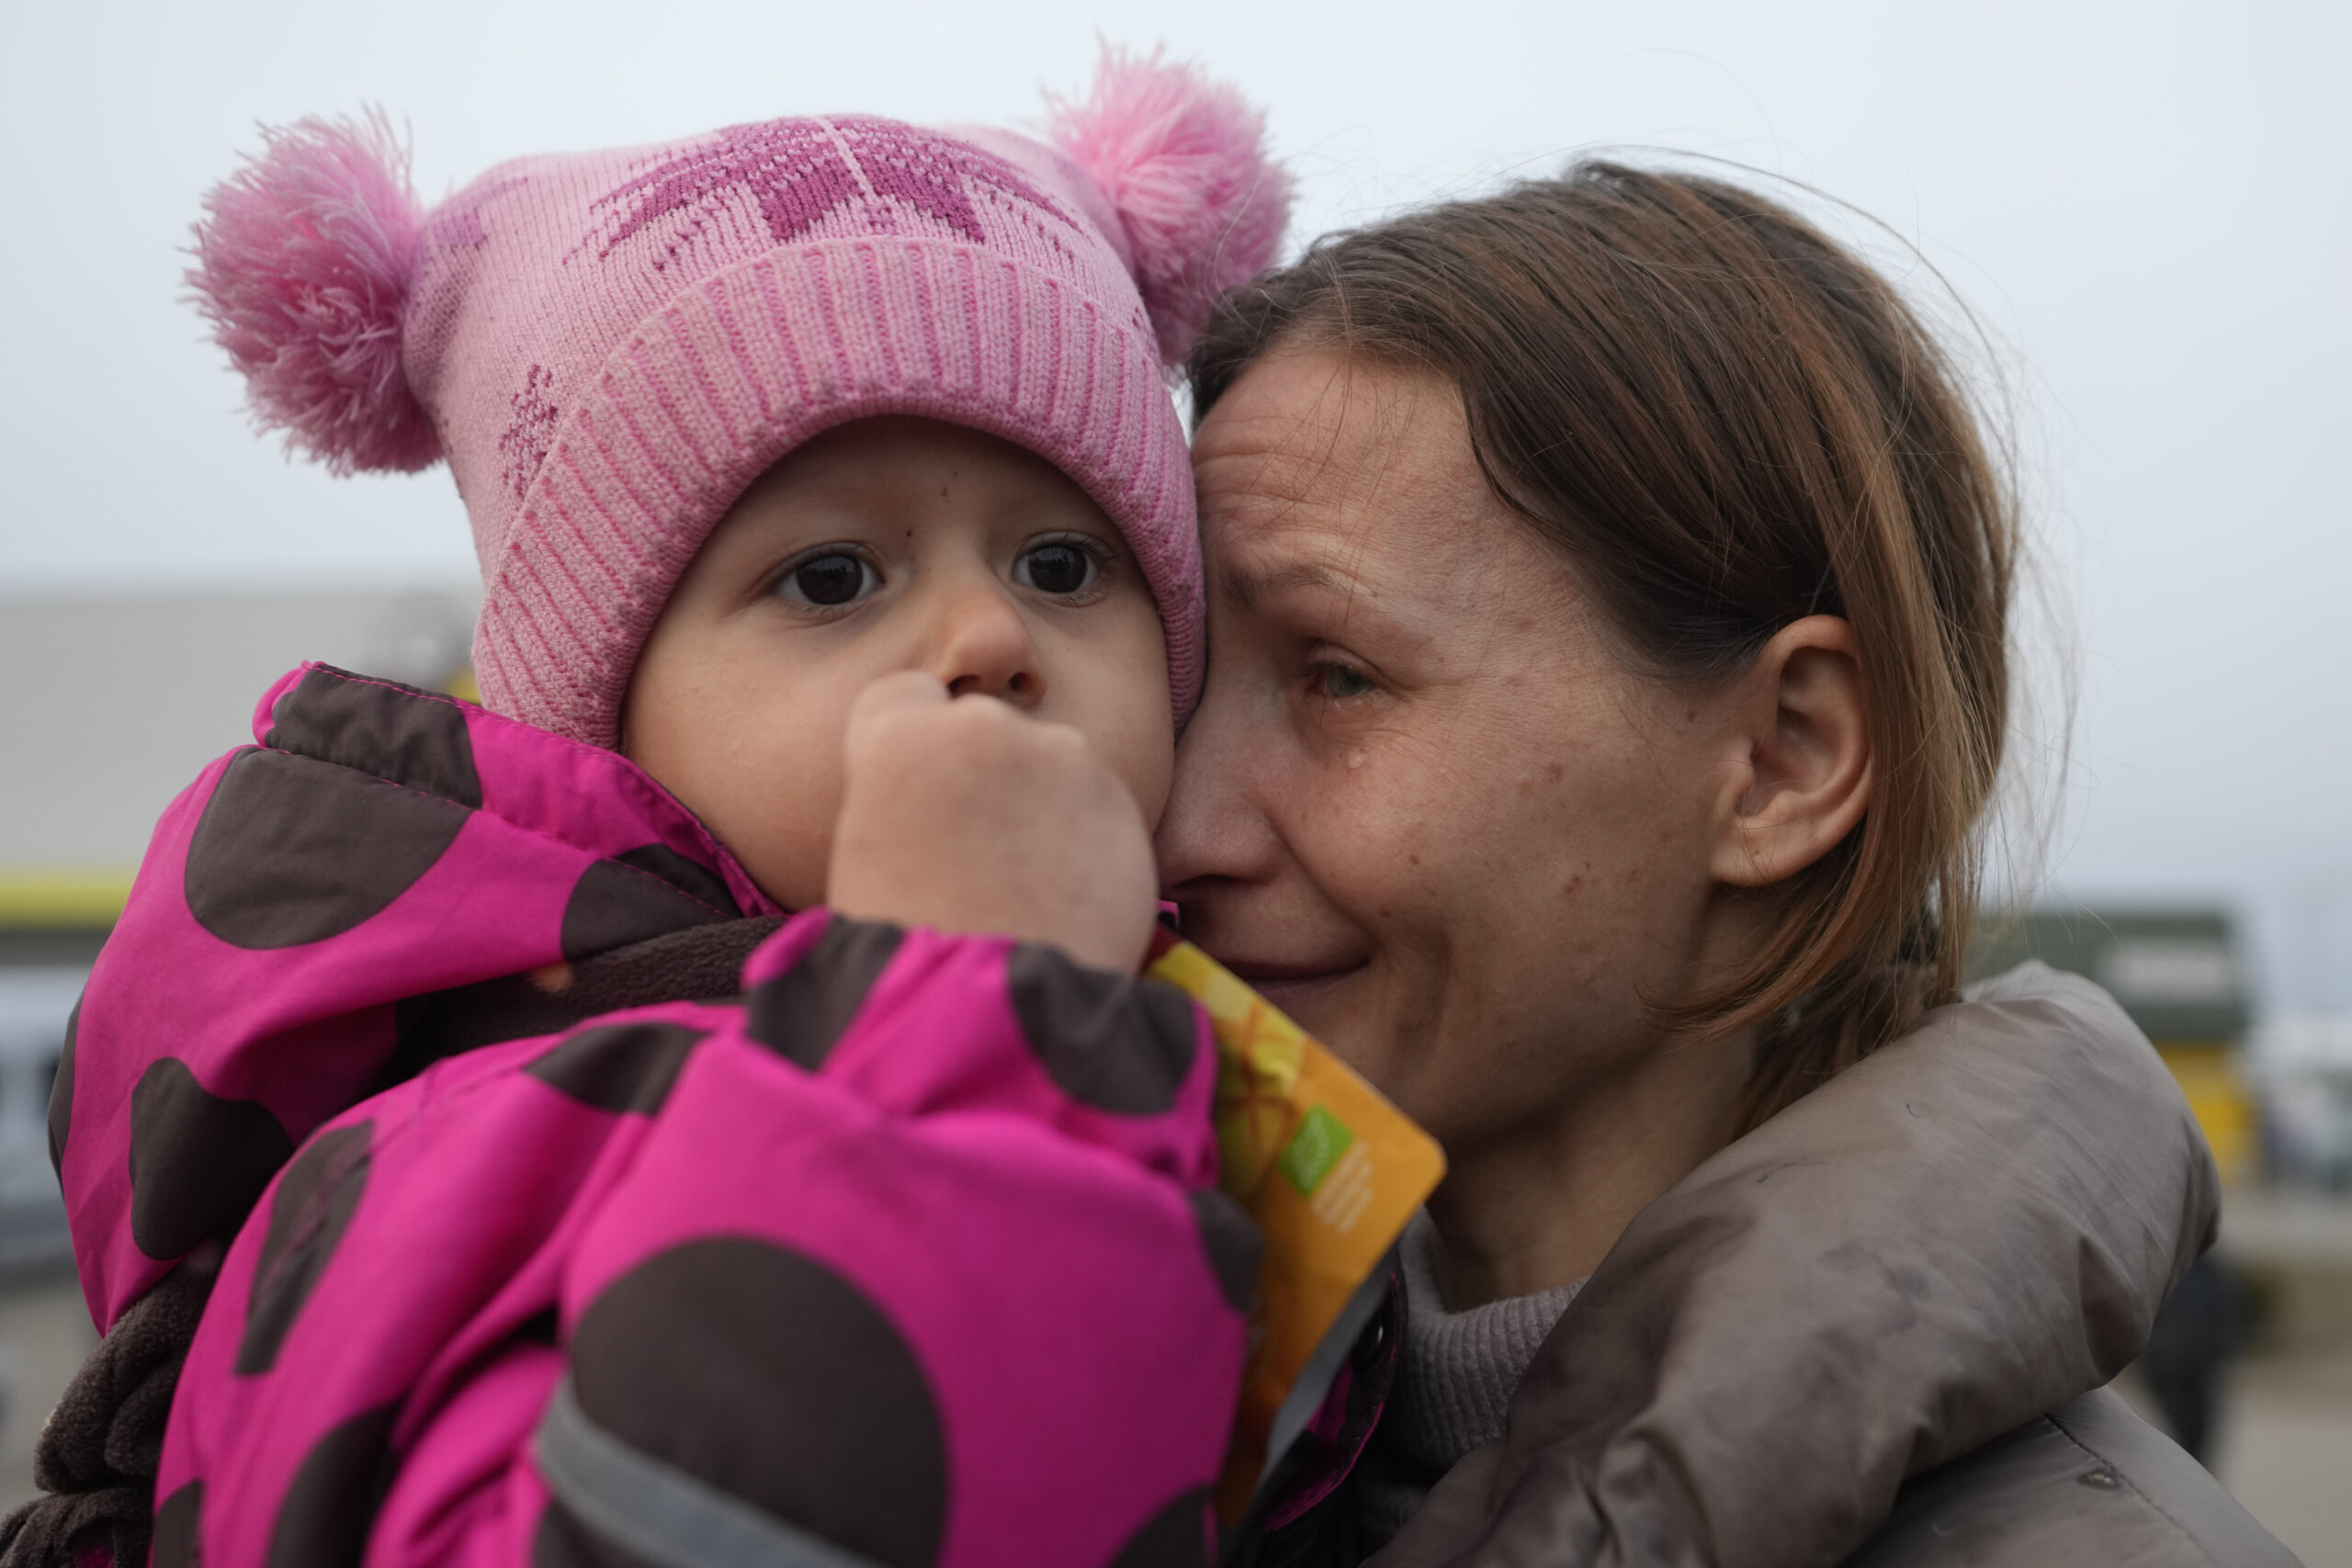 Impressionante il numero di bambini di cui si sono perse le tracce in Ucraina dall'inizio della guerra...